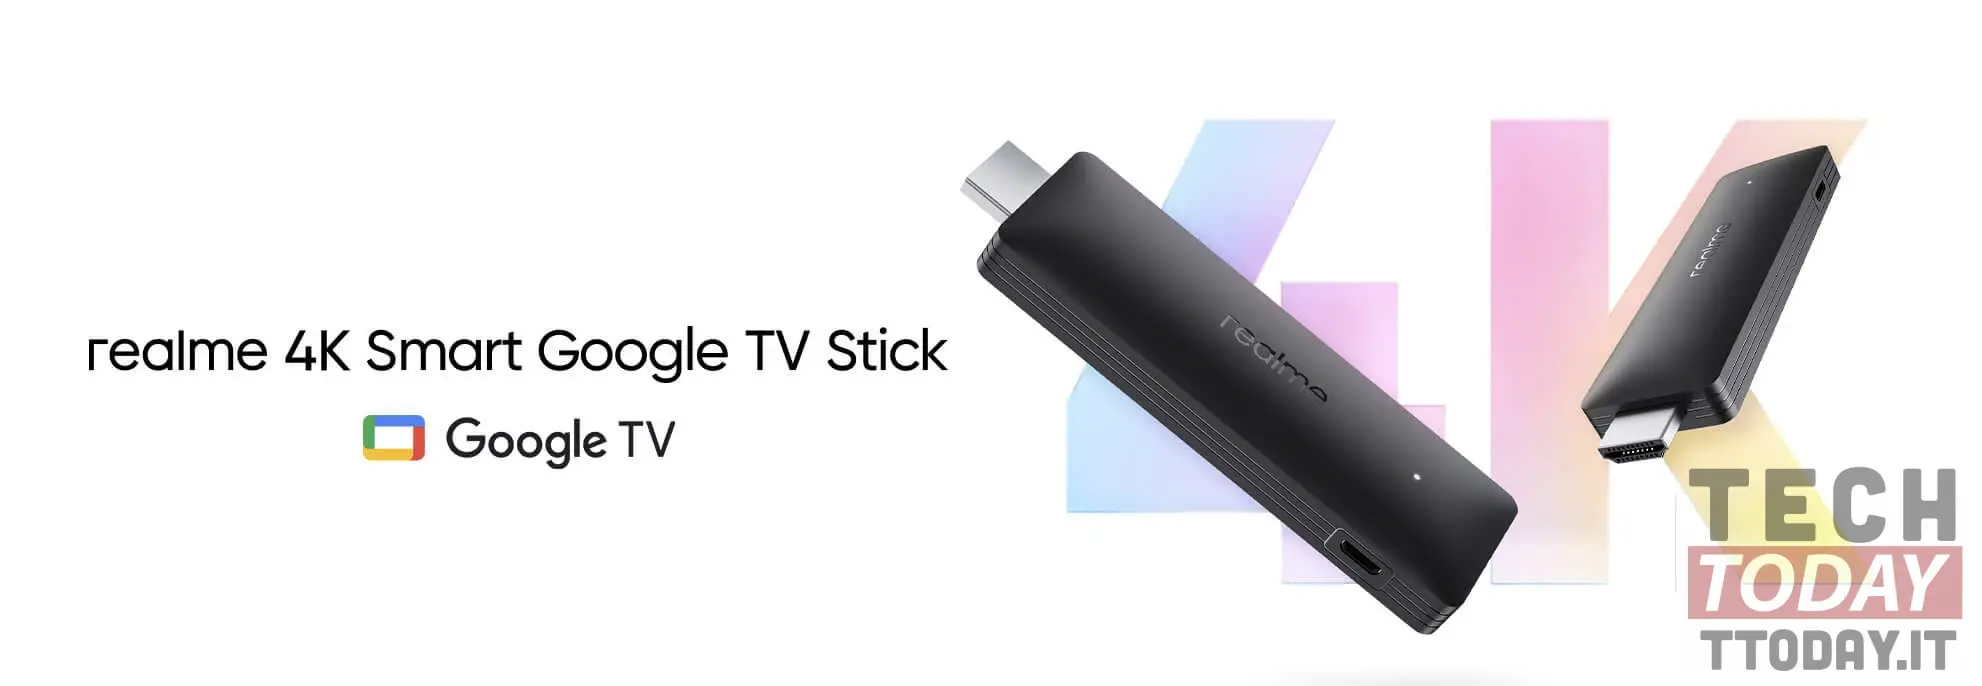 realme tv stick 4k wordt het alternatief voor google chromecast